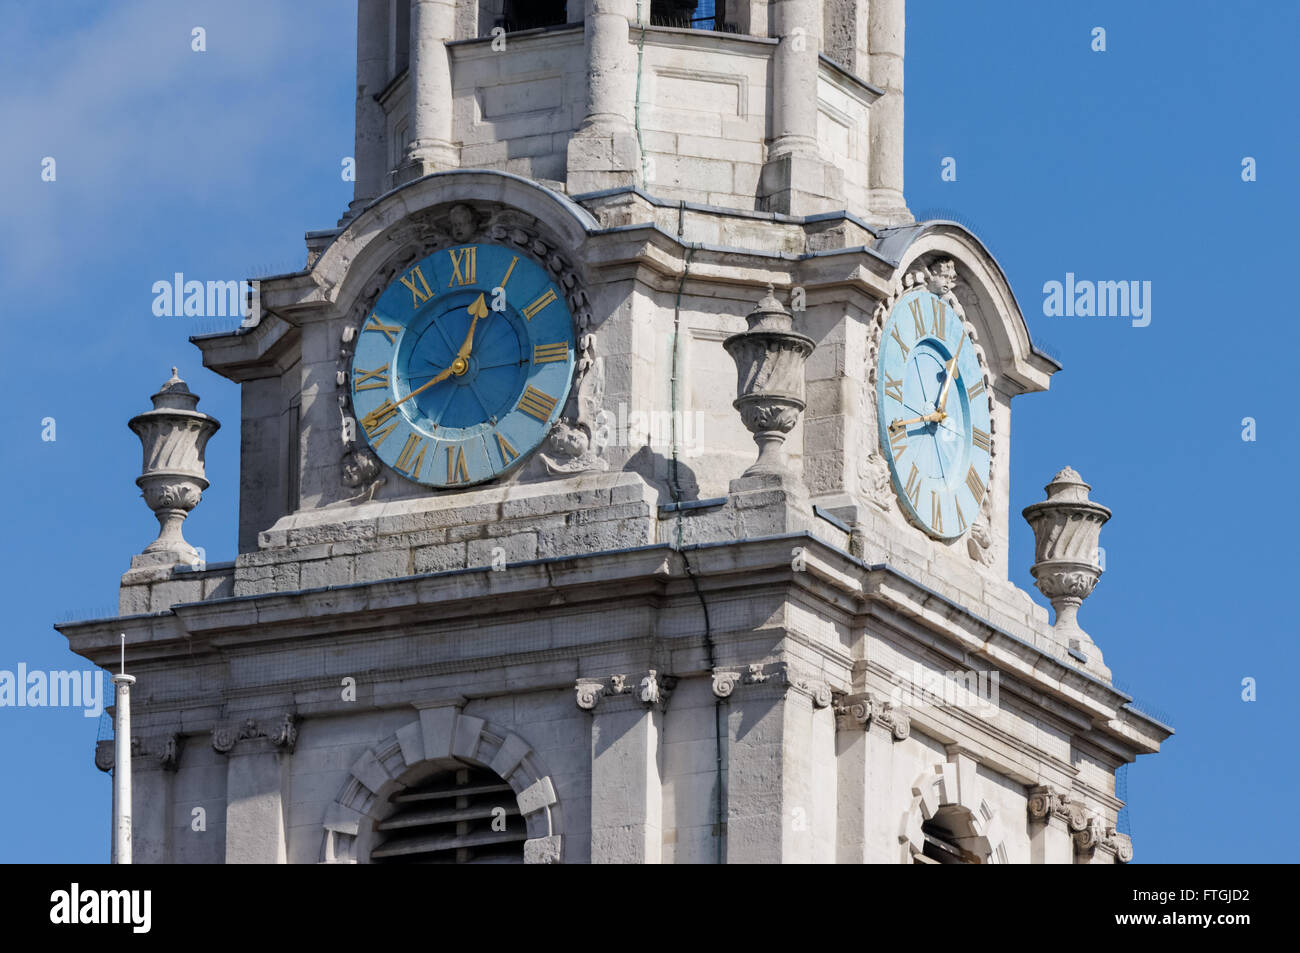 Uhr Turm von St. Martin-in-the-Fields-Kirche auf dem Trafalgar Square, London England Vereinigtes Königreich UK Stockfoto